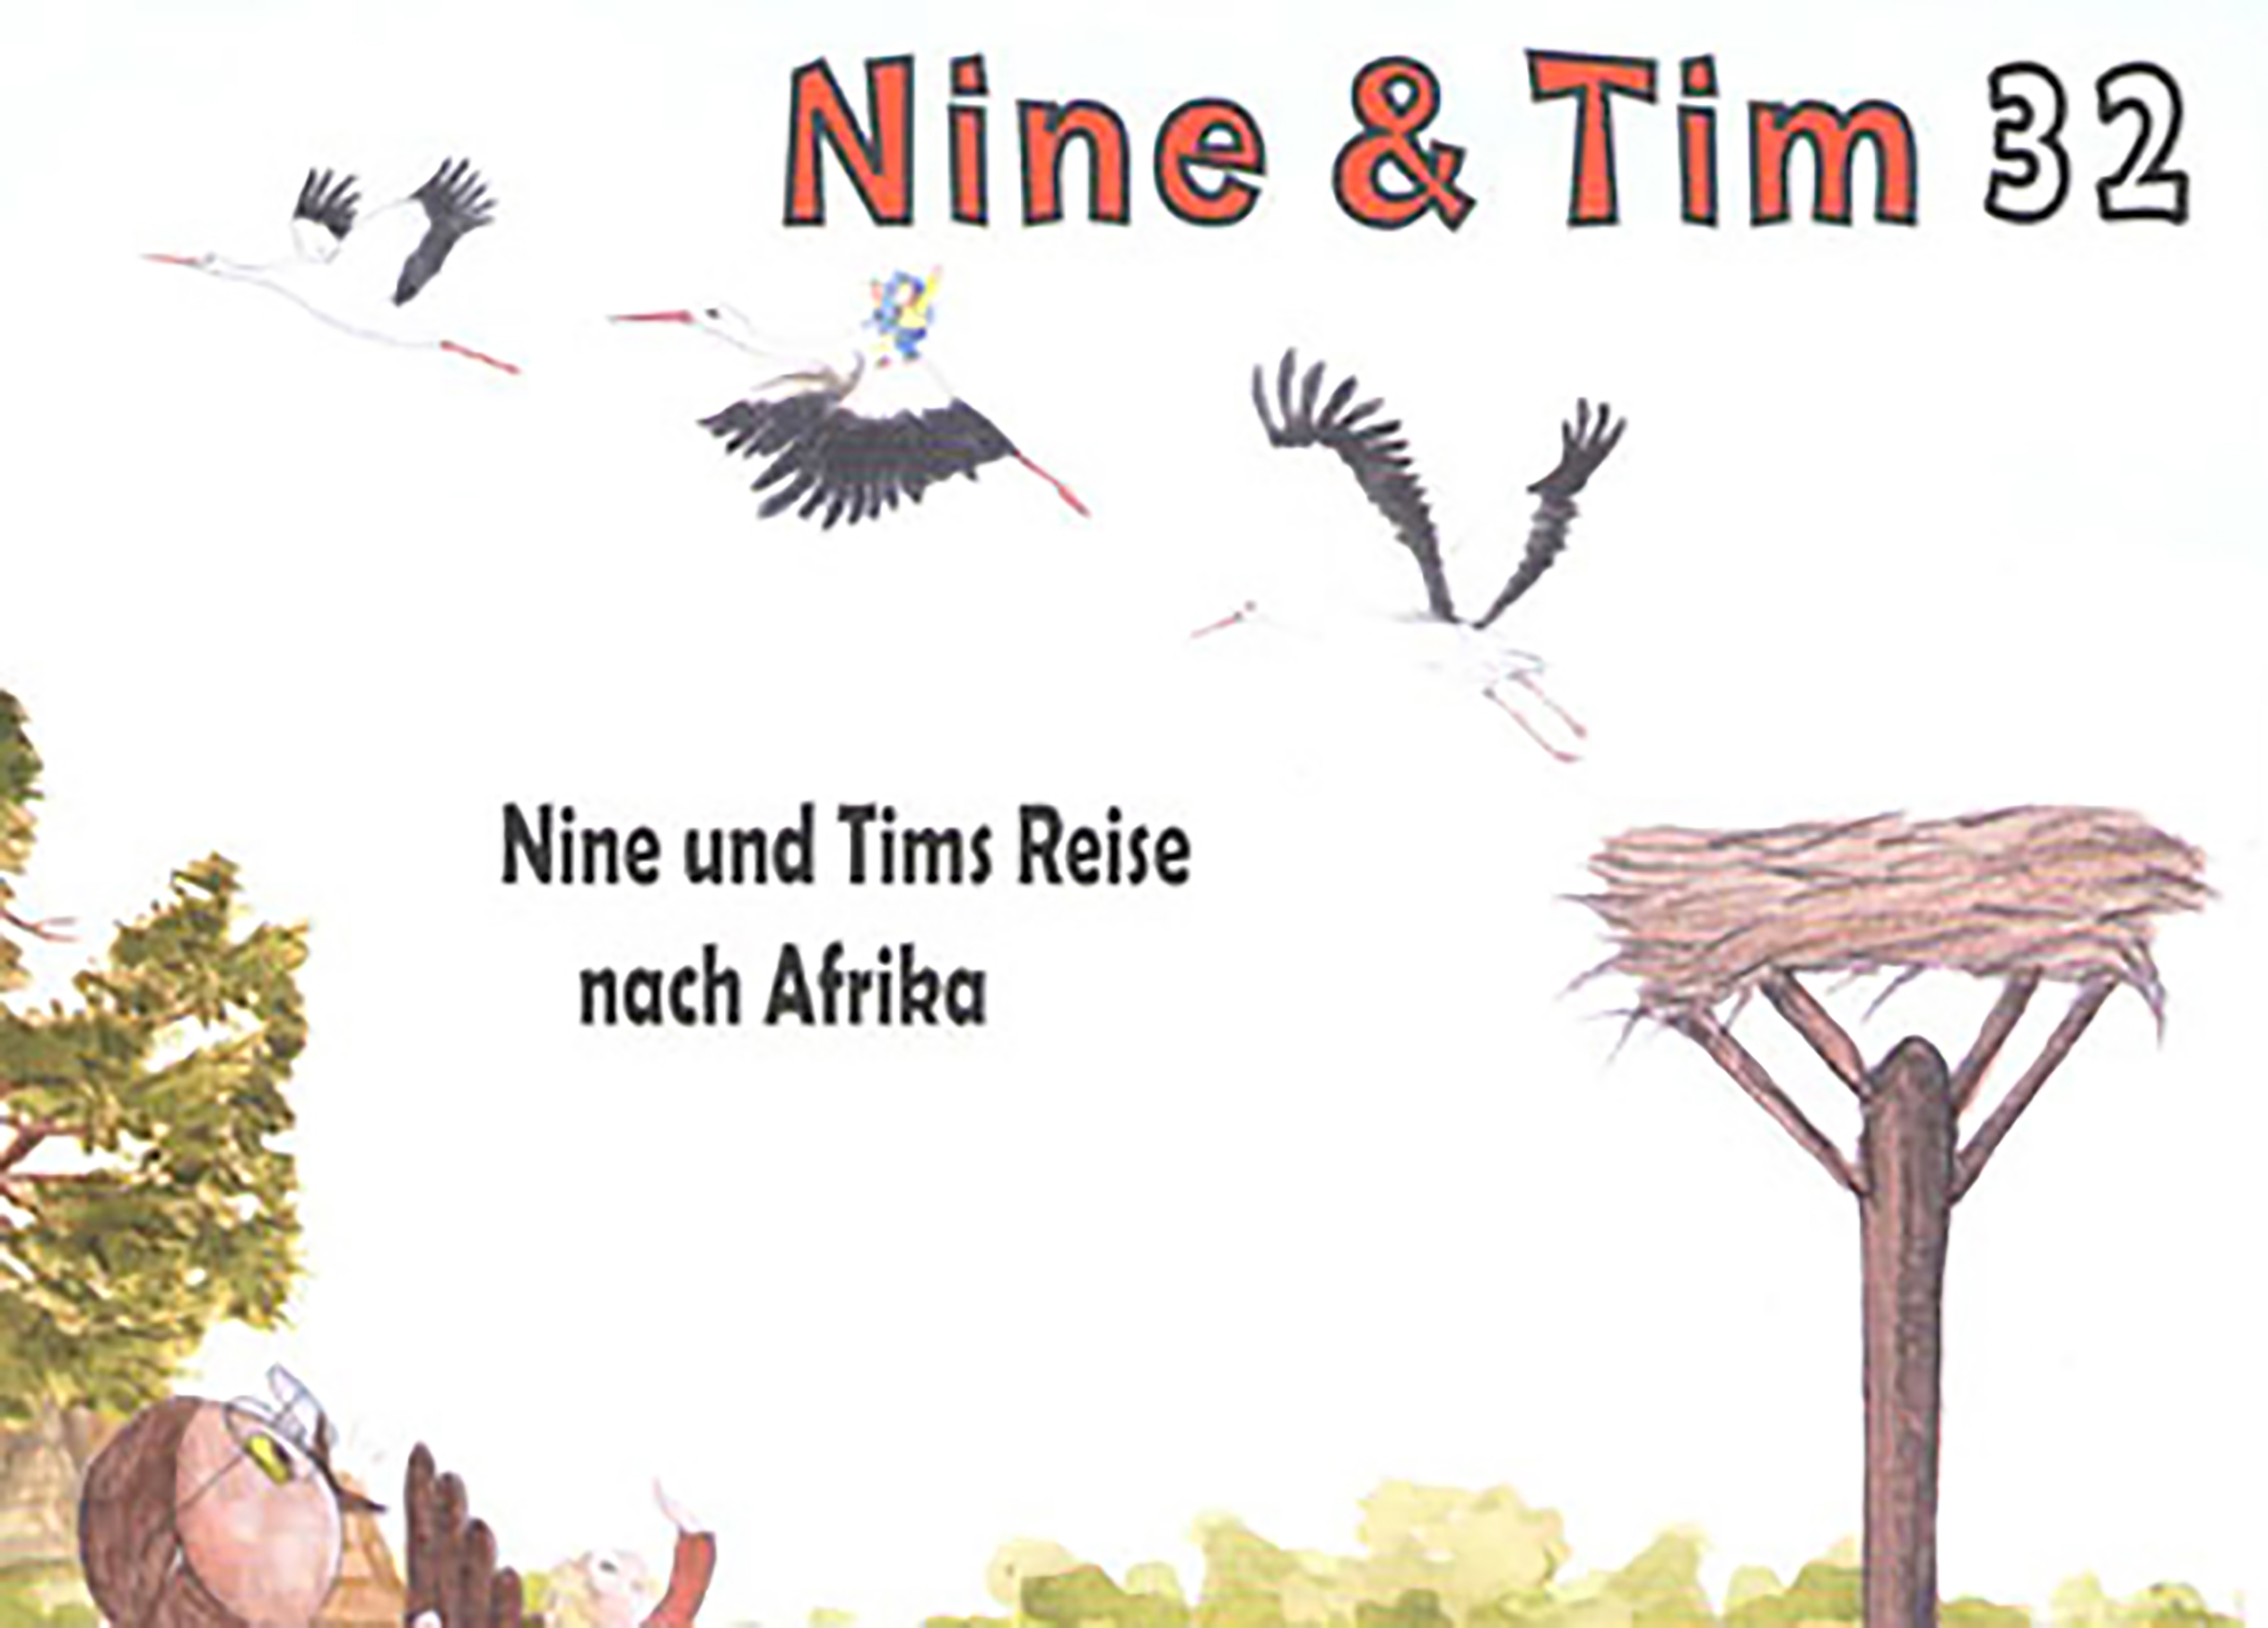 Das Bild zeigt ein Cover der Publikation Nine  Tim Heft 32